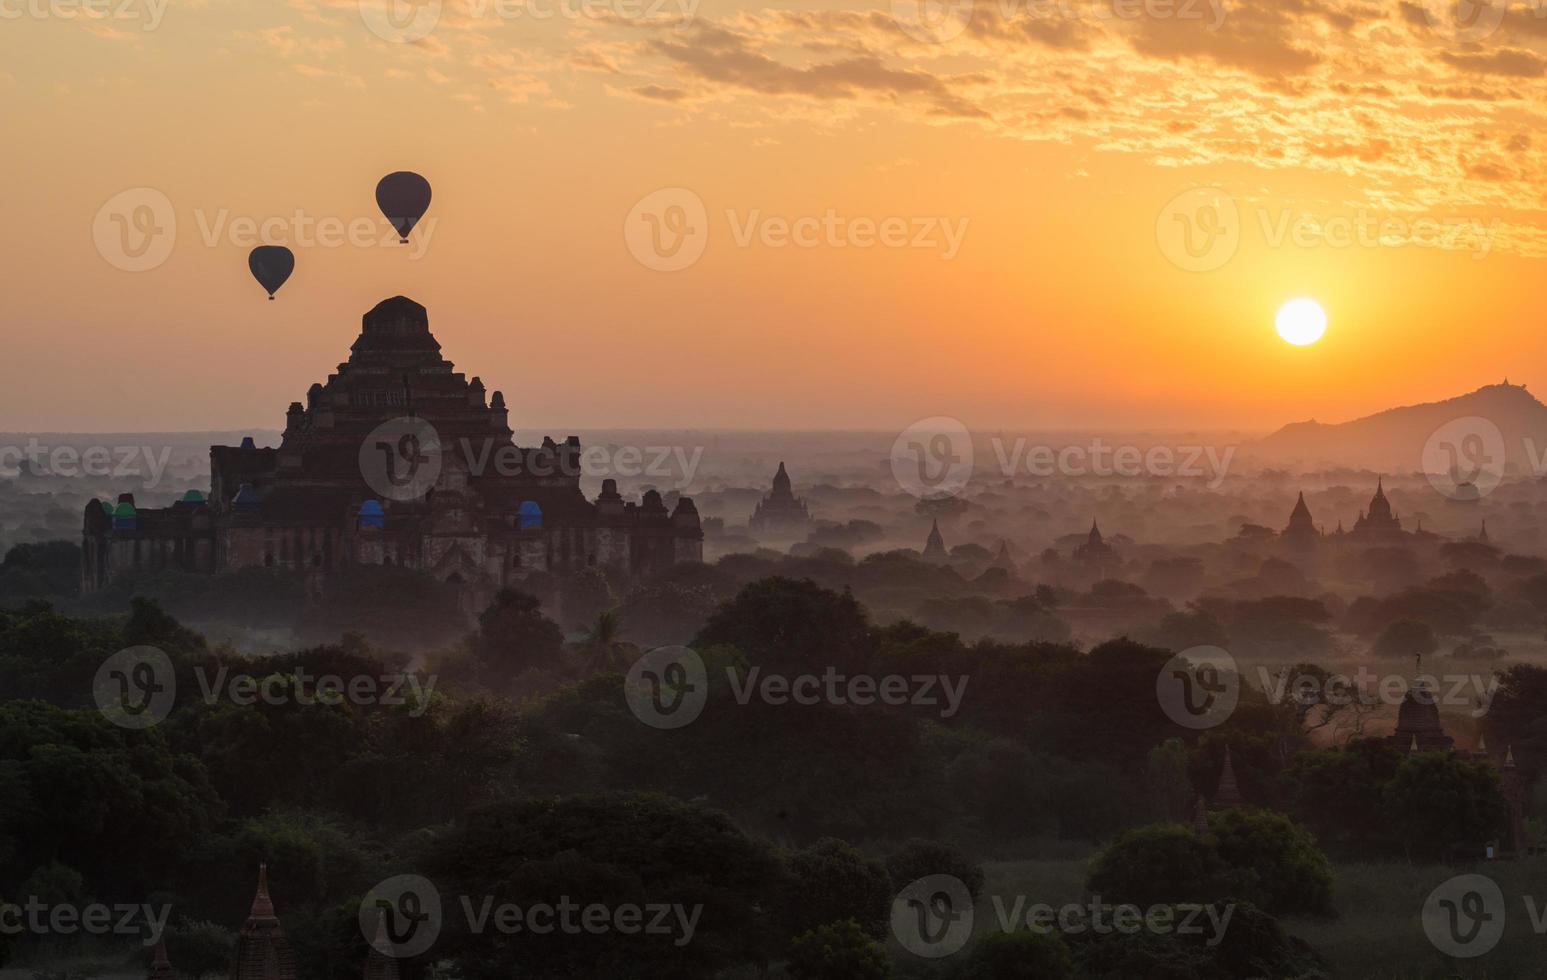 globos aerostáticos sobrevuelan el templo dhammayangyi, el templo más grande de las llanuras de bagan, durante el amanecer de la mañana en myanmar. foto